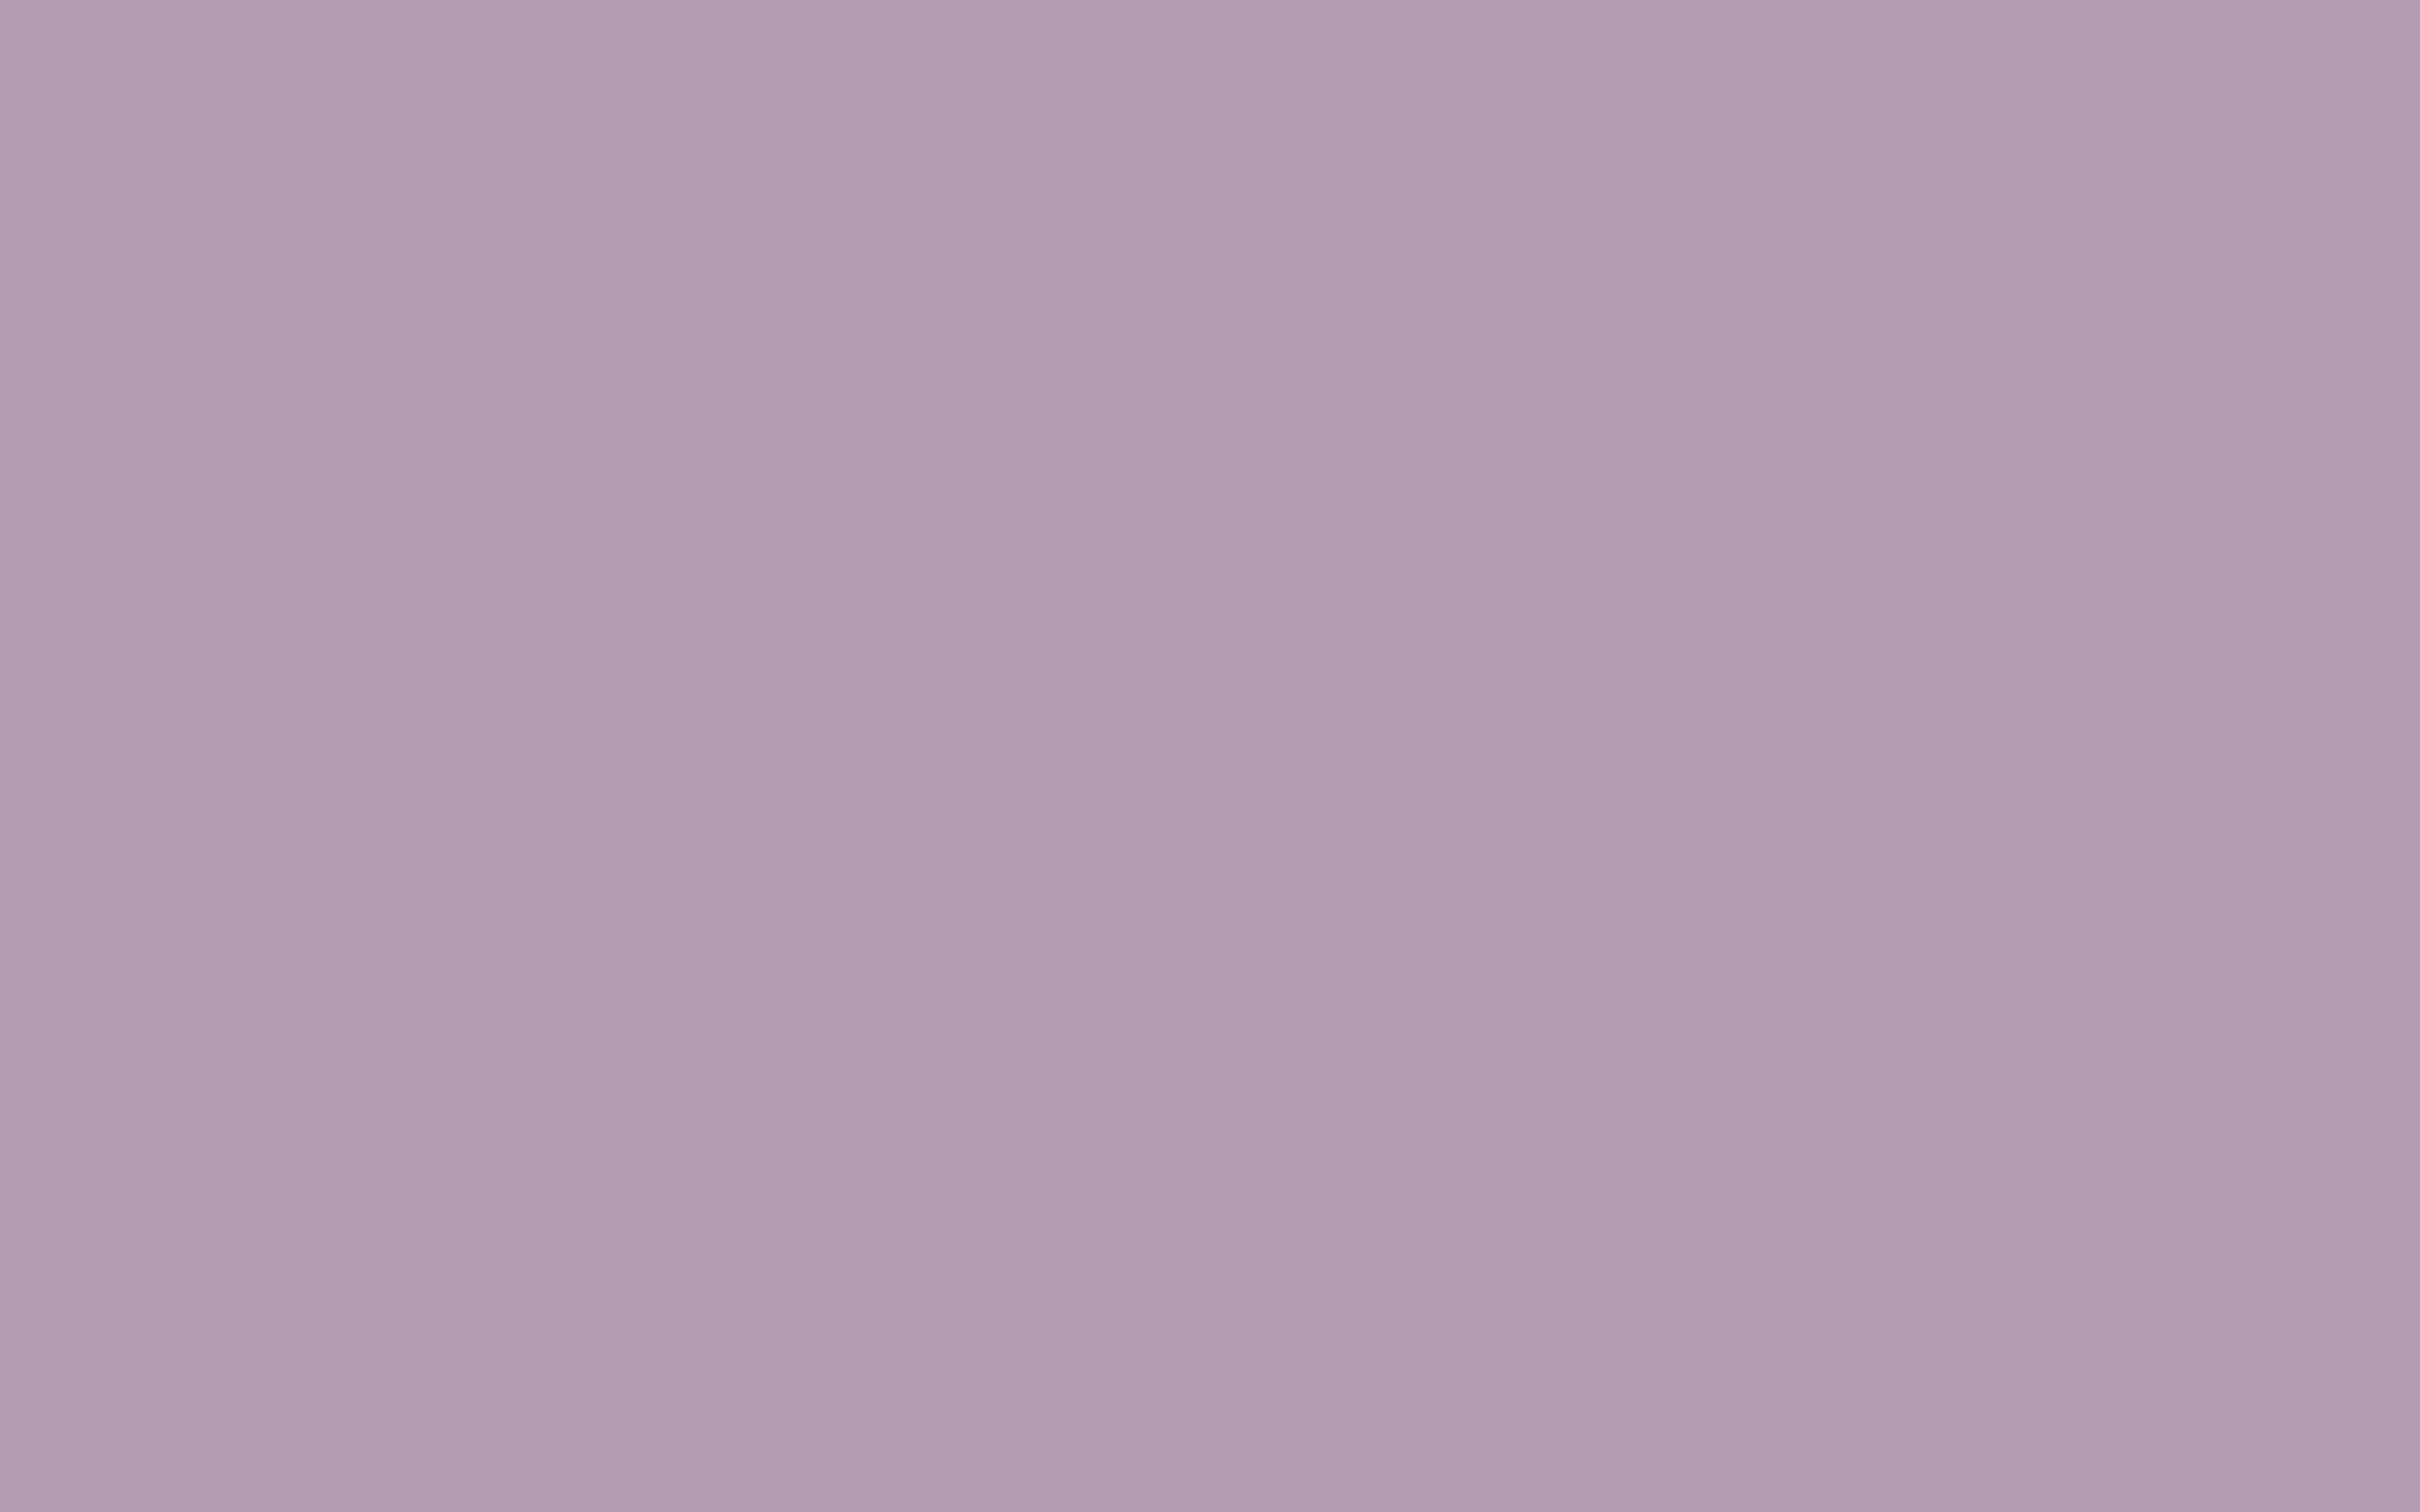 Lovely Light Lavender Color 7 1920x1080 Pastel Purple Solid plain color  pink backgrounds HD wallpaper  Pxfuel